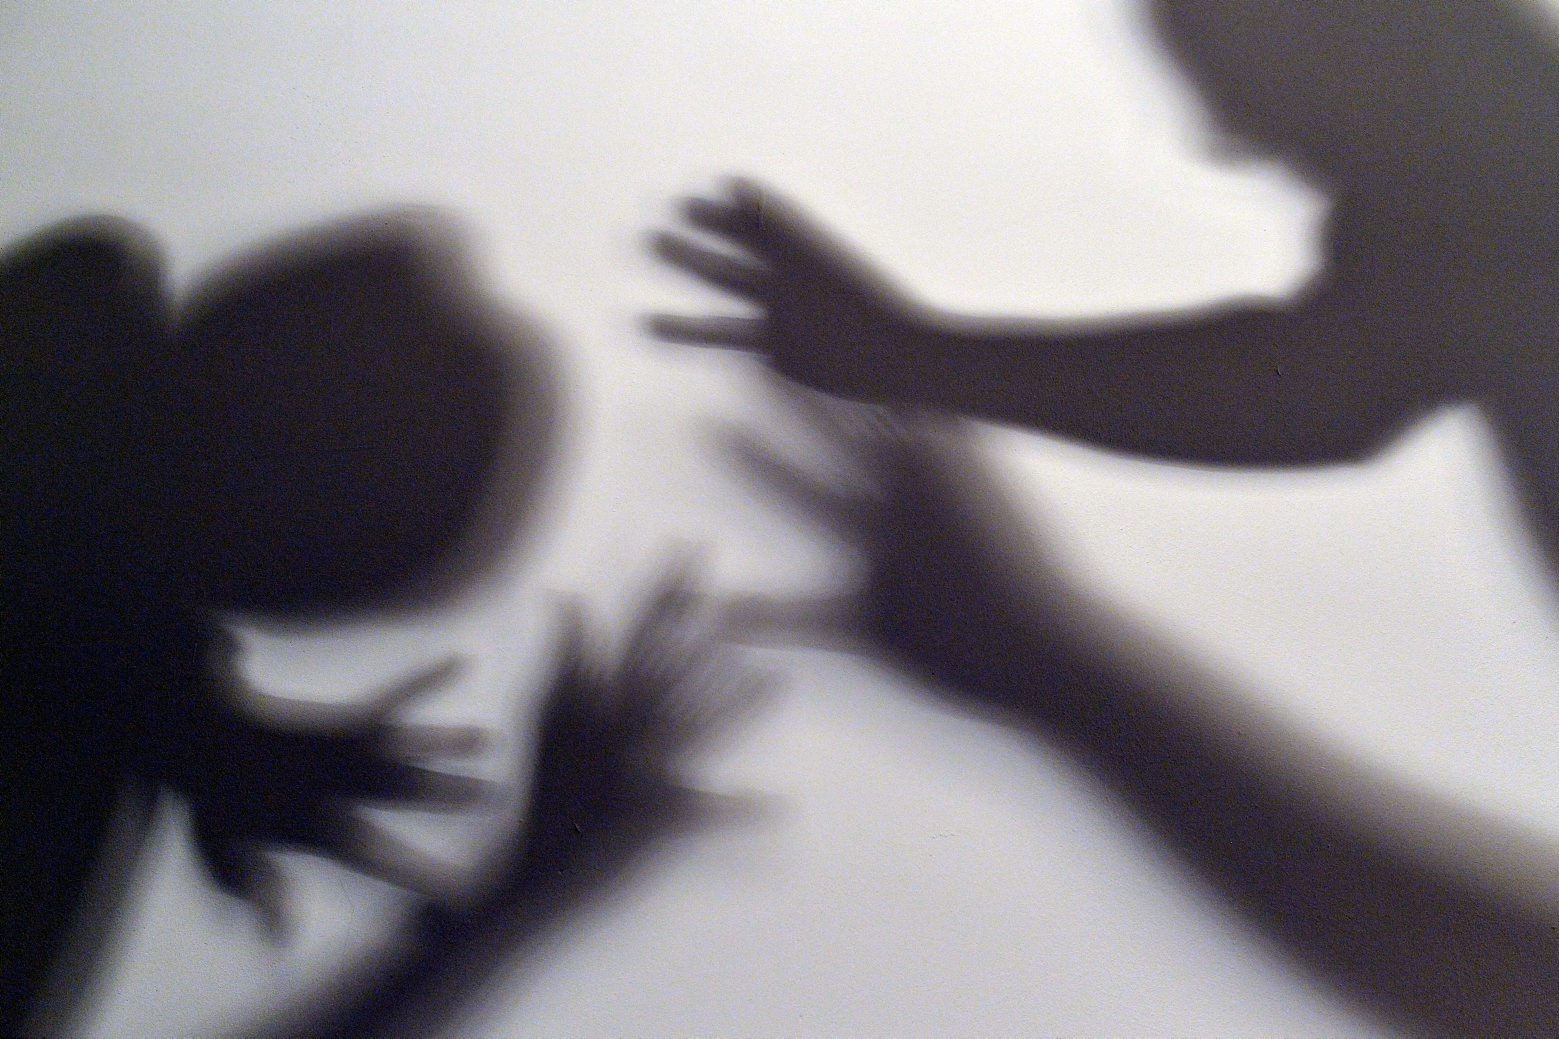 ARCHIV - ILLUSTRATION - Gestelltes Bild zum Thema häusliche Gewalt: Schatten sollen symbolisieren, wie ein Kind versucht, sich am 07.06.2016 in Berlin vor der Gewalt eines Erwachsenen zu schützen. (zu dpa "Gewalt gegen Kinder - ein Überblick" vom 13.07.2017) (KEYSTONE/DPA/A3576/_Maurizio Gambarini) DEUTSCHLAND GEWALT GEGEN KINDER